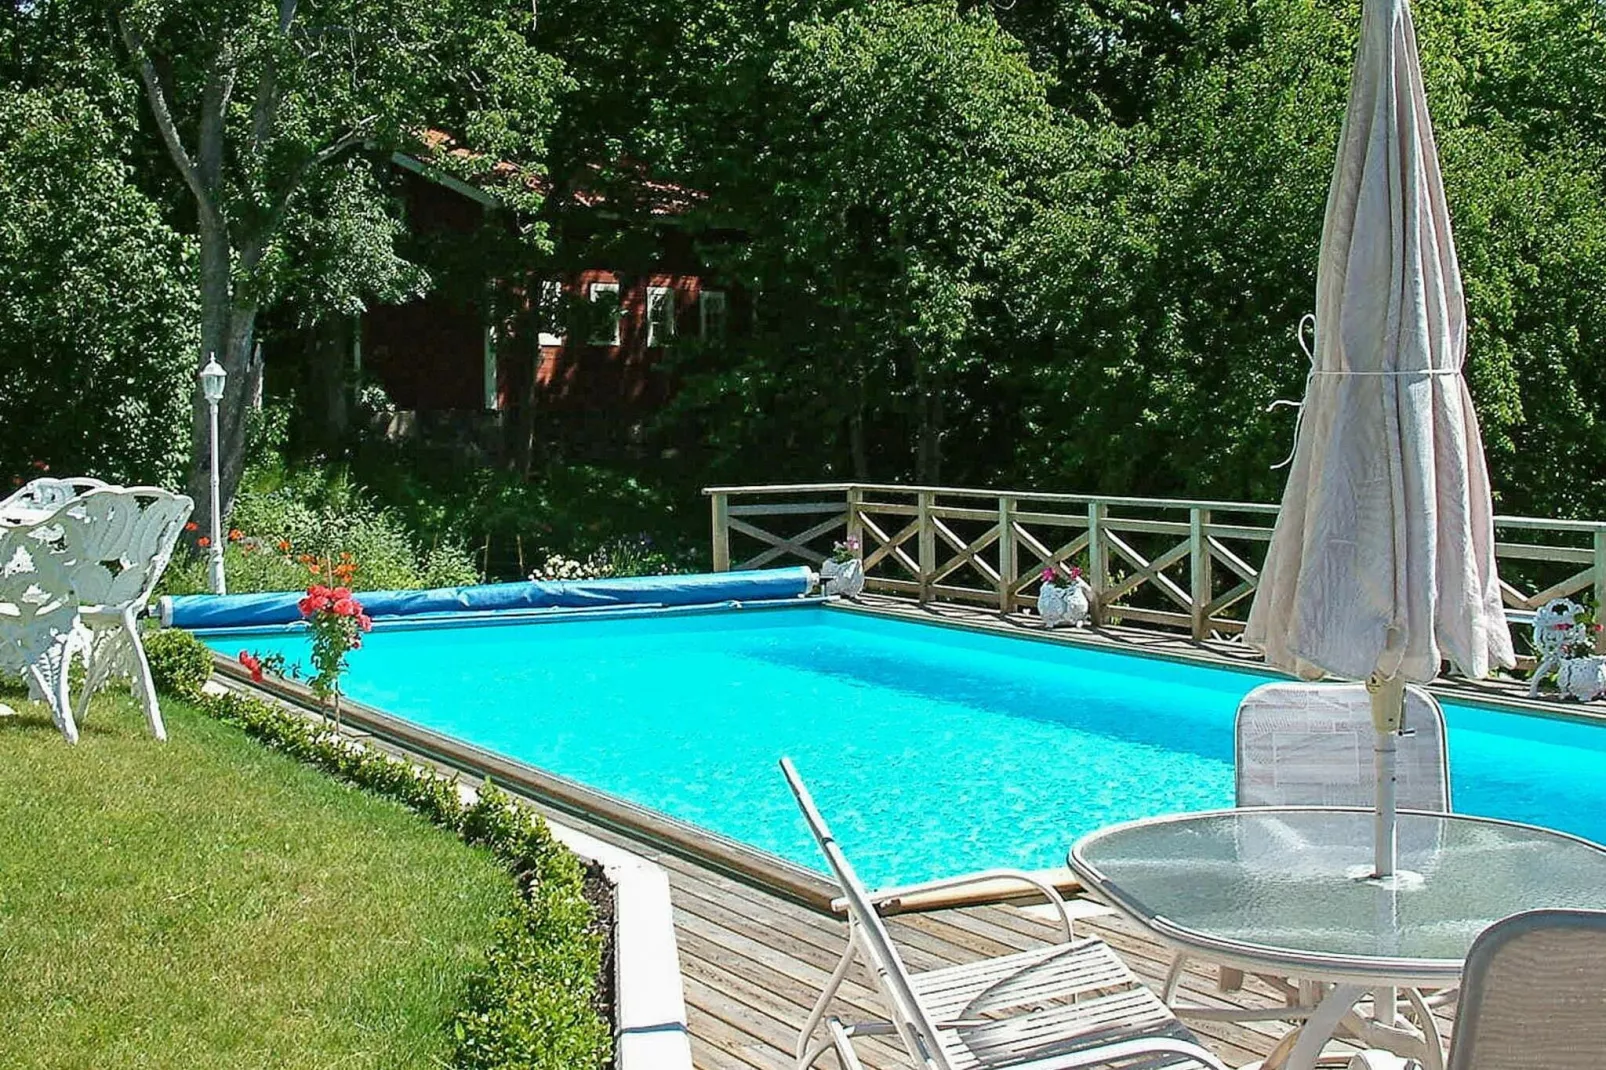 4 sterren vakantie huis in VALDEMARSVIK-Zwembad